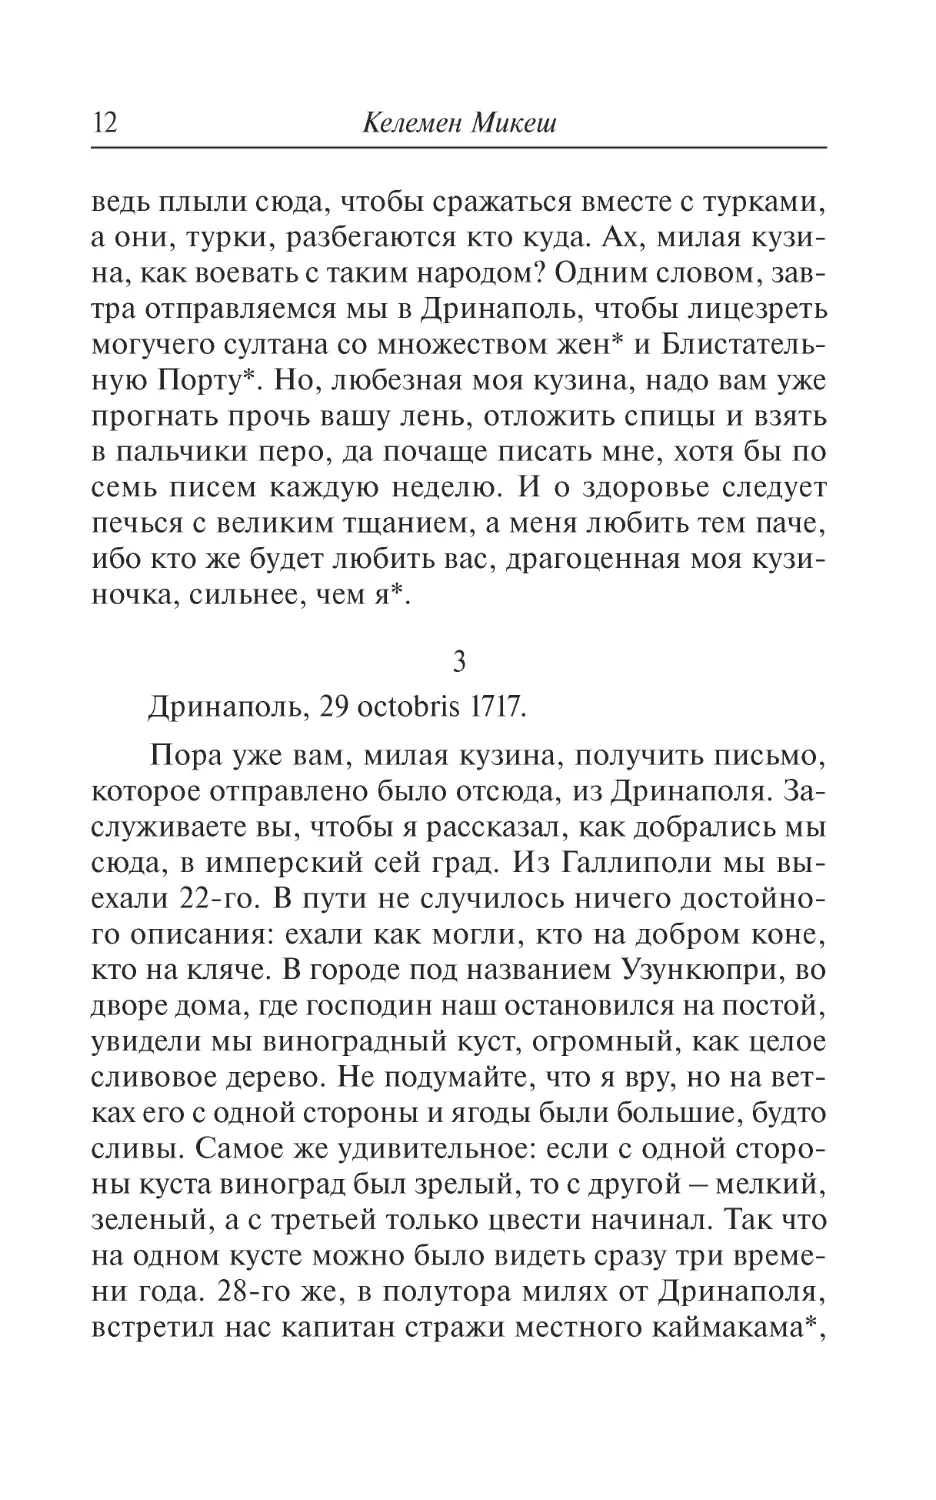 3. Дринаполь, 29 octobris 1717